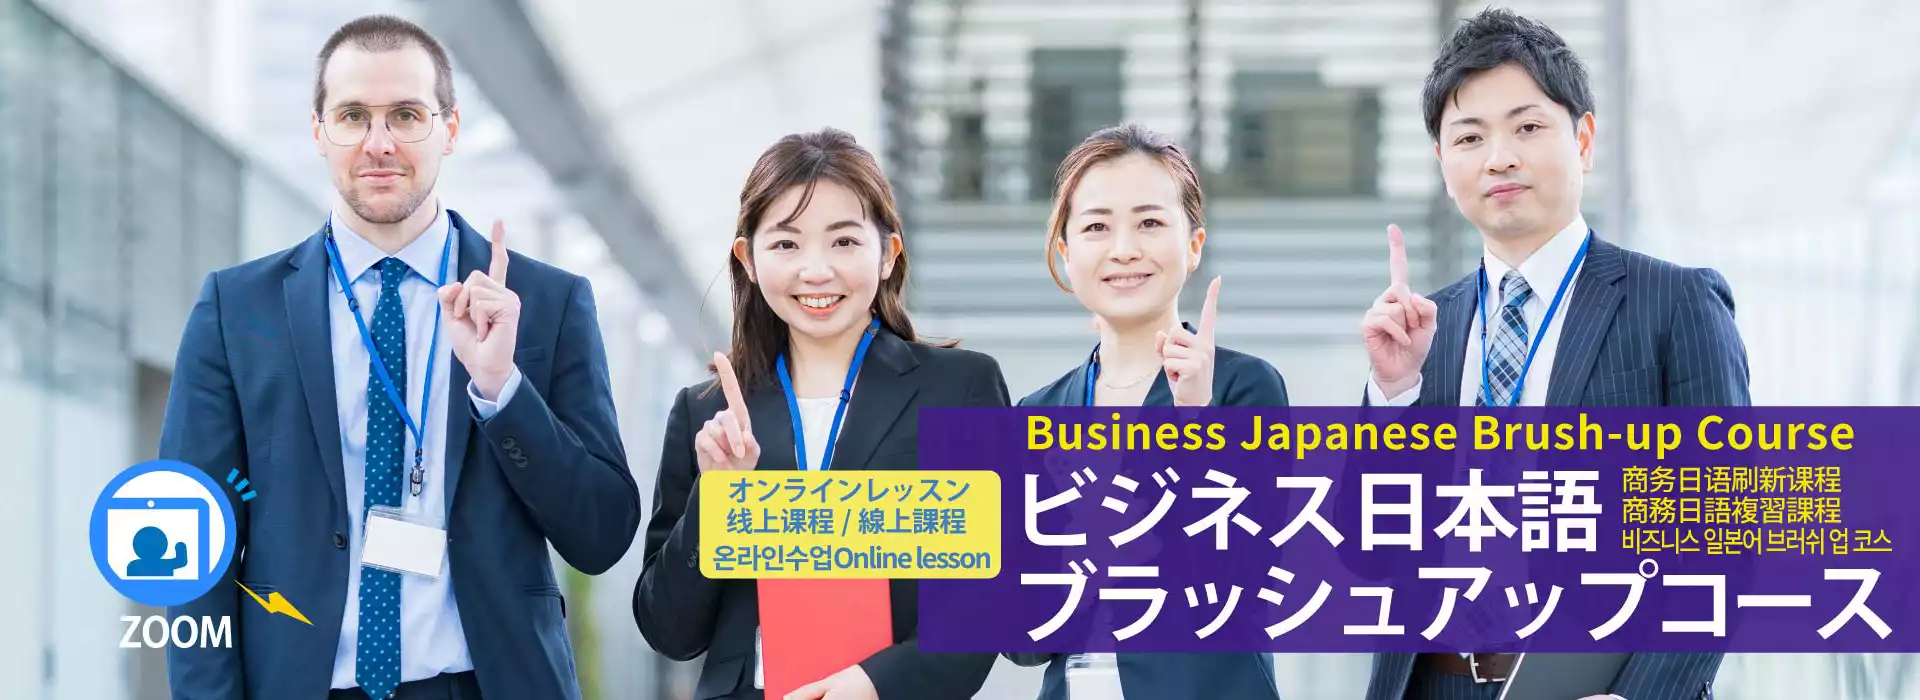 オンラインビジネス日本語ブラッシュアップコース